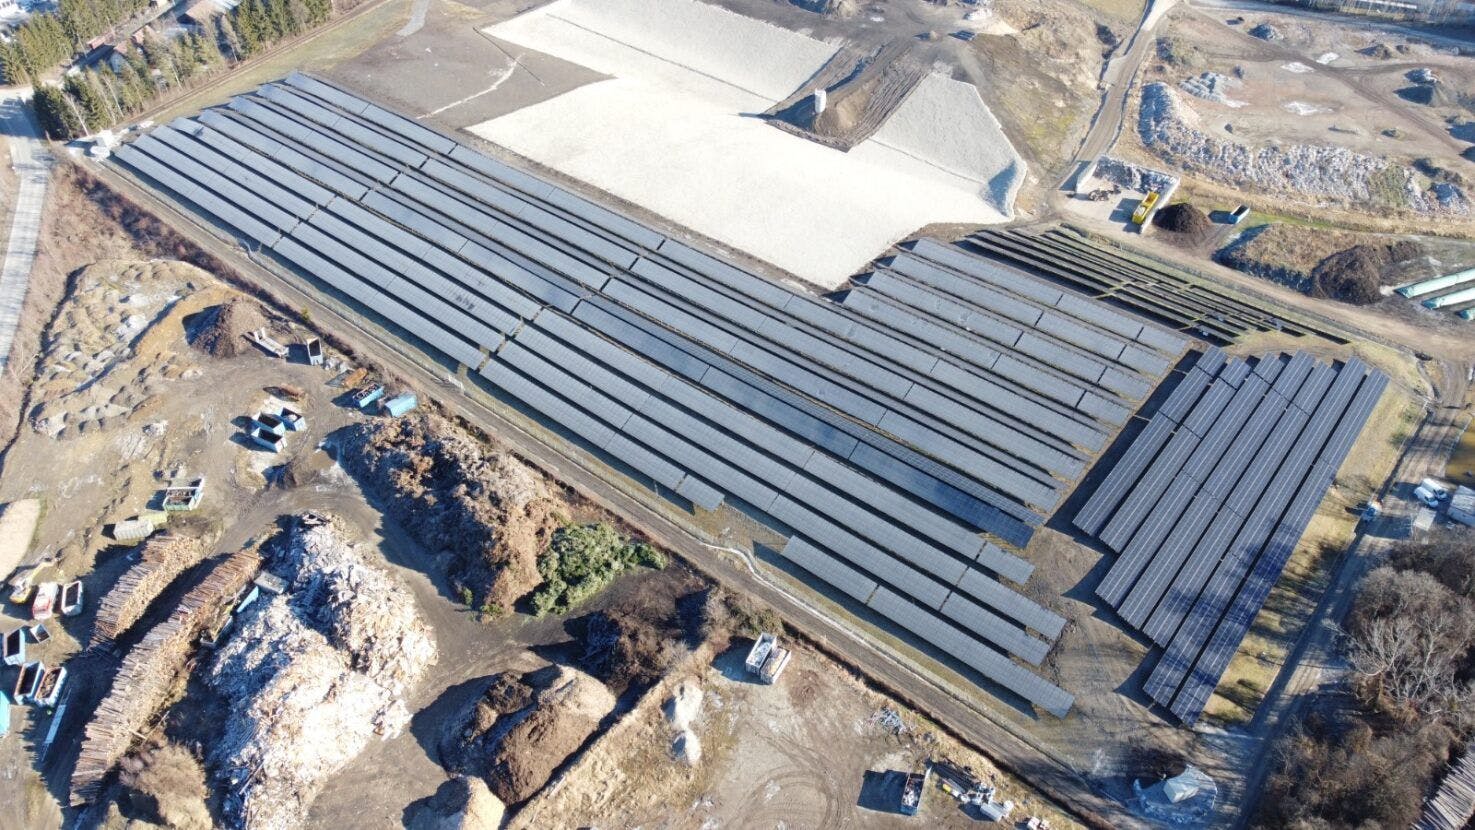 Greenbuddies realizovali pozemní solární elektrárnu v Rakousku